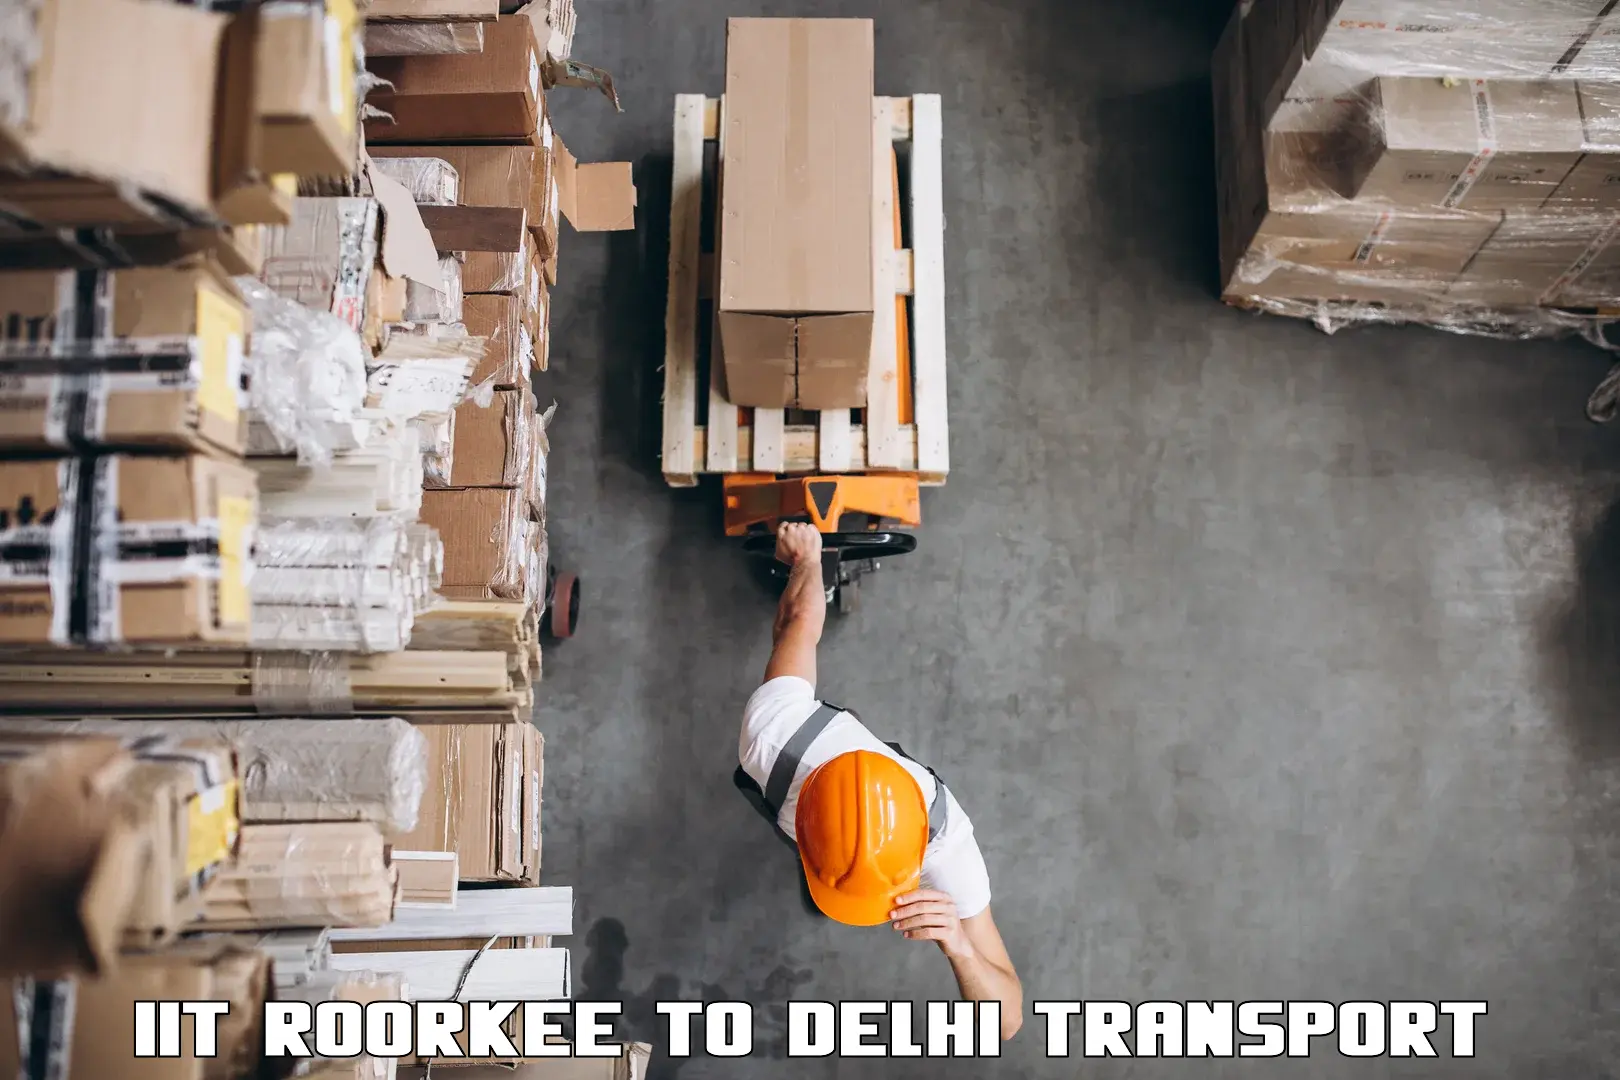 Commercial transport service IIT Roorkee to Delhi